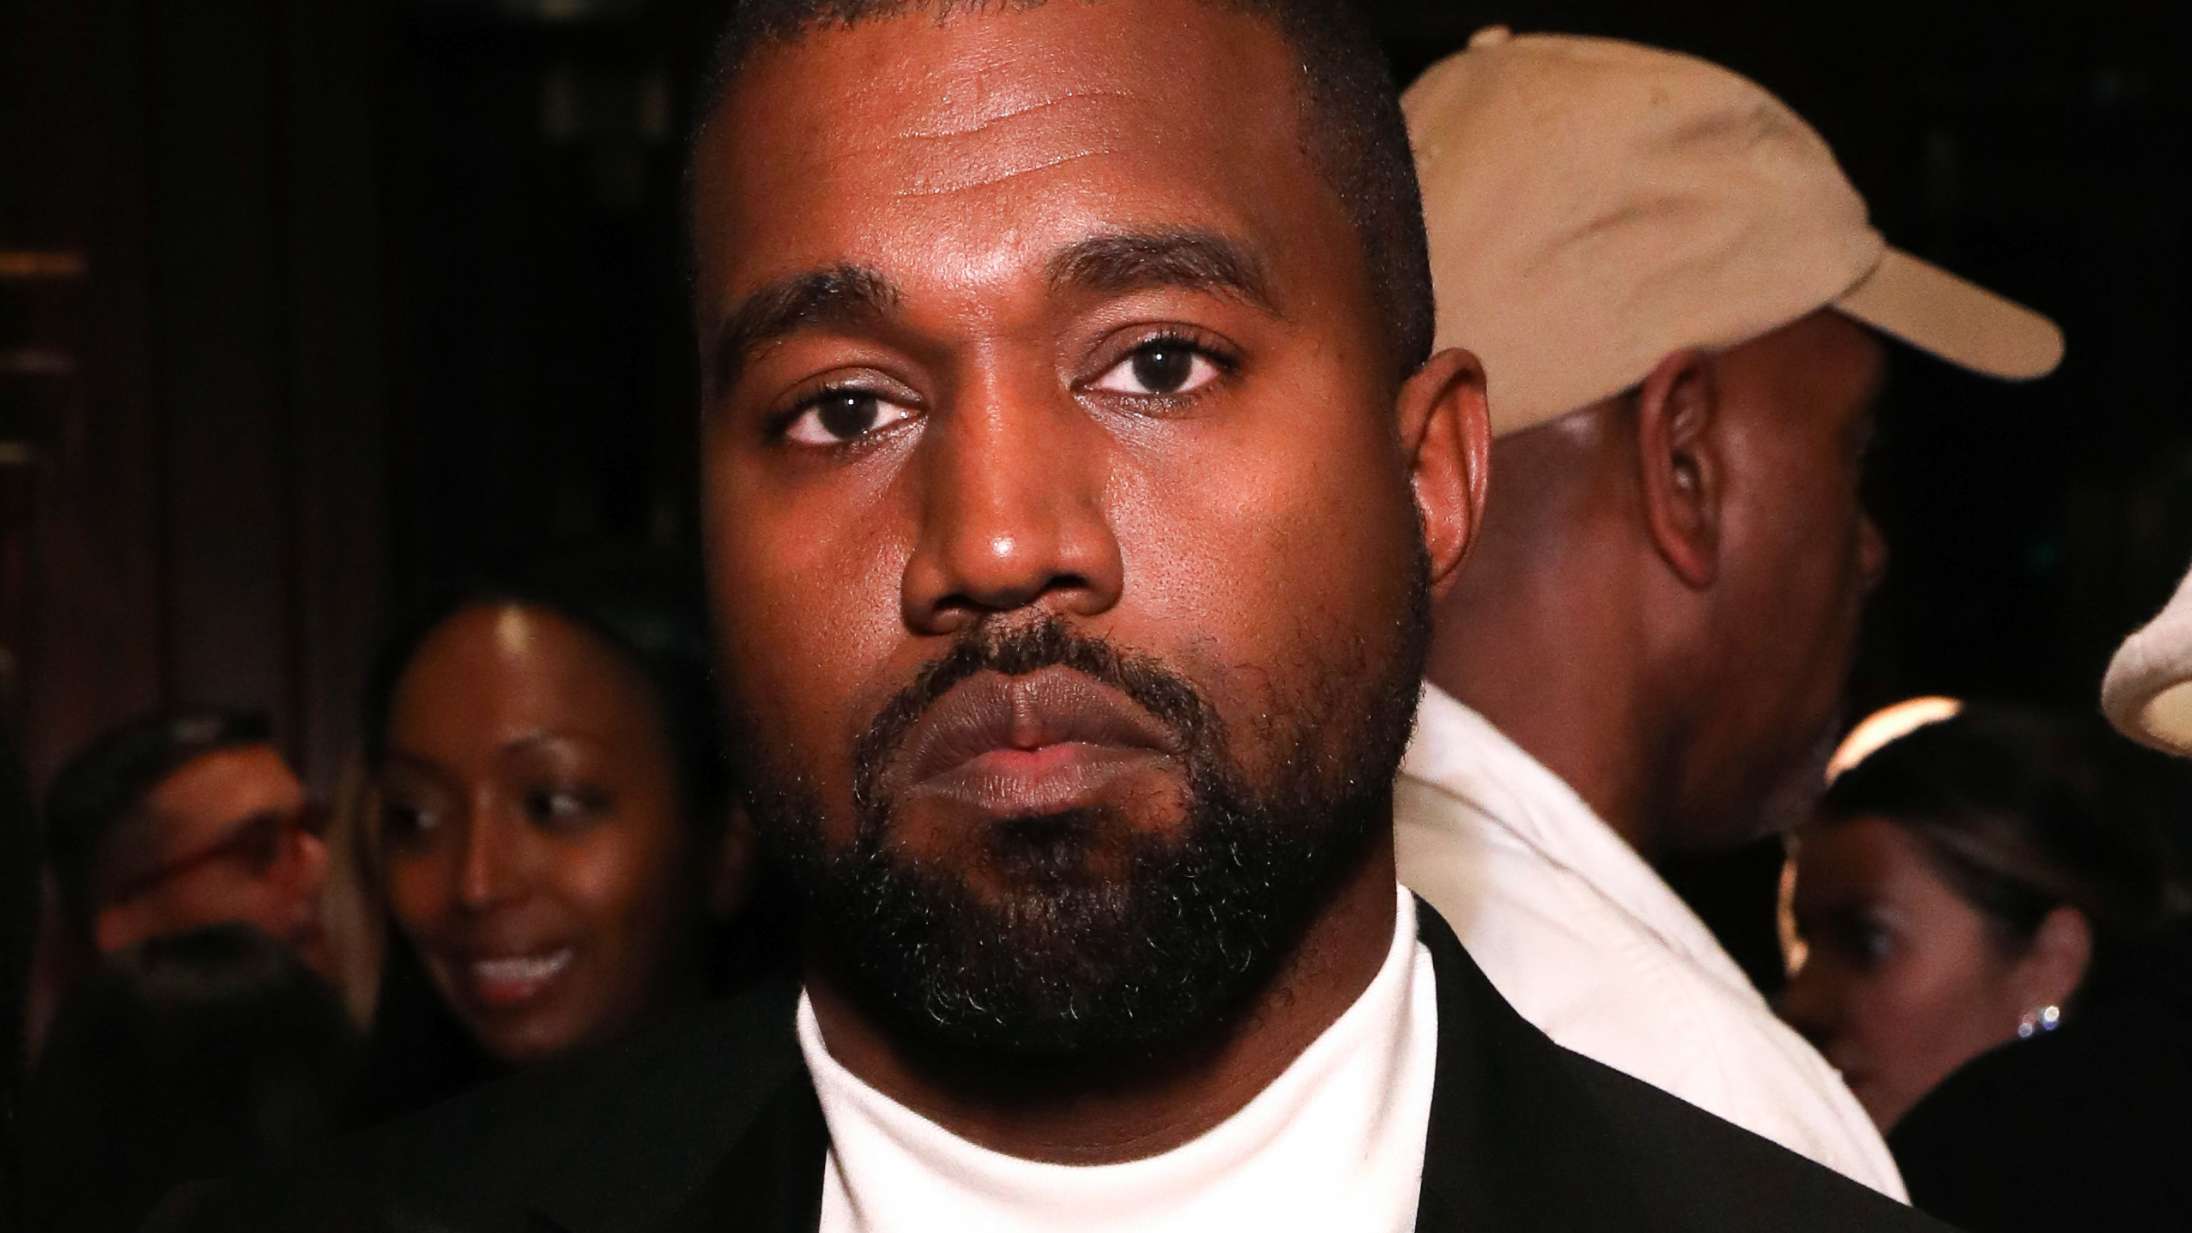 Kanye West giver MAGA-hat og præsidentkampagne en del af skylden for bruddet med Kim Kardashian i Thanksgiving-tale